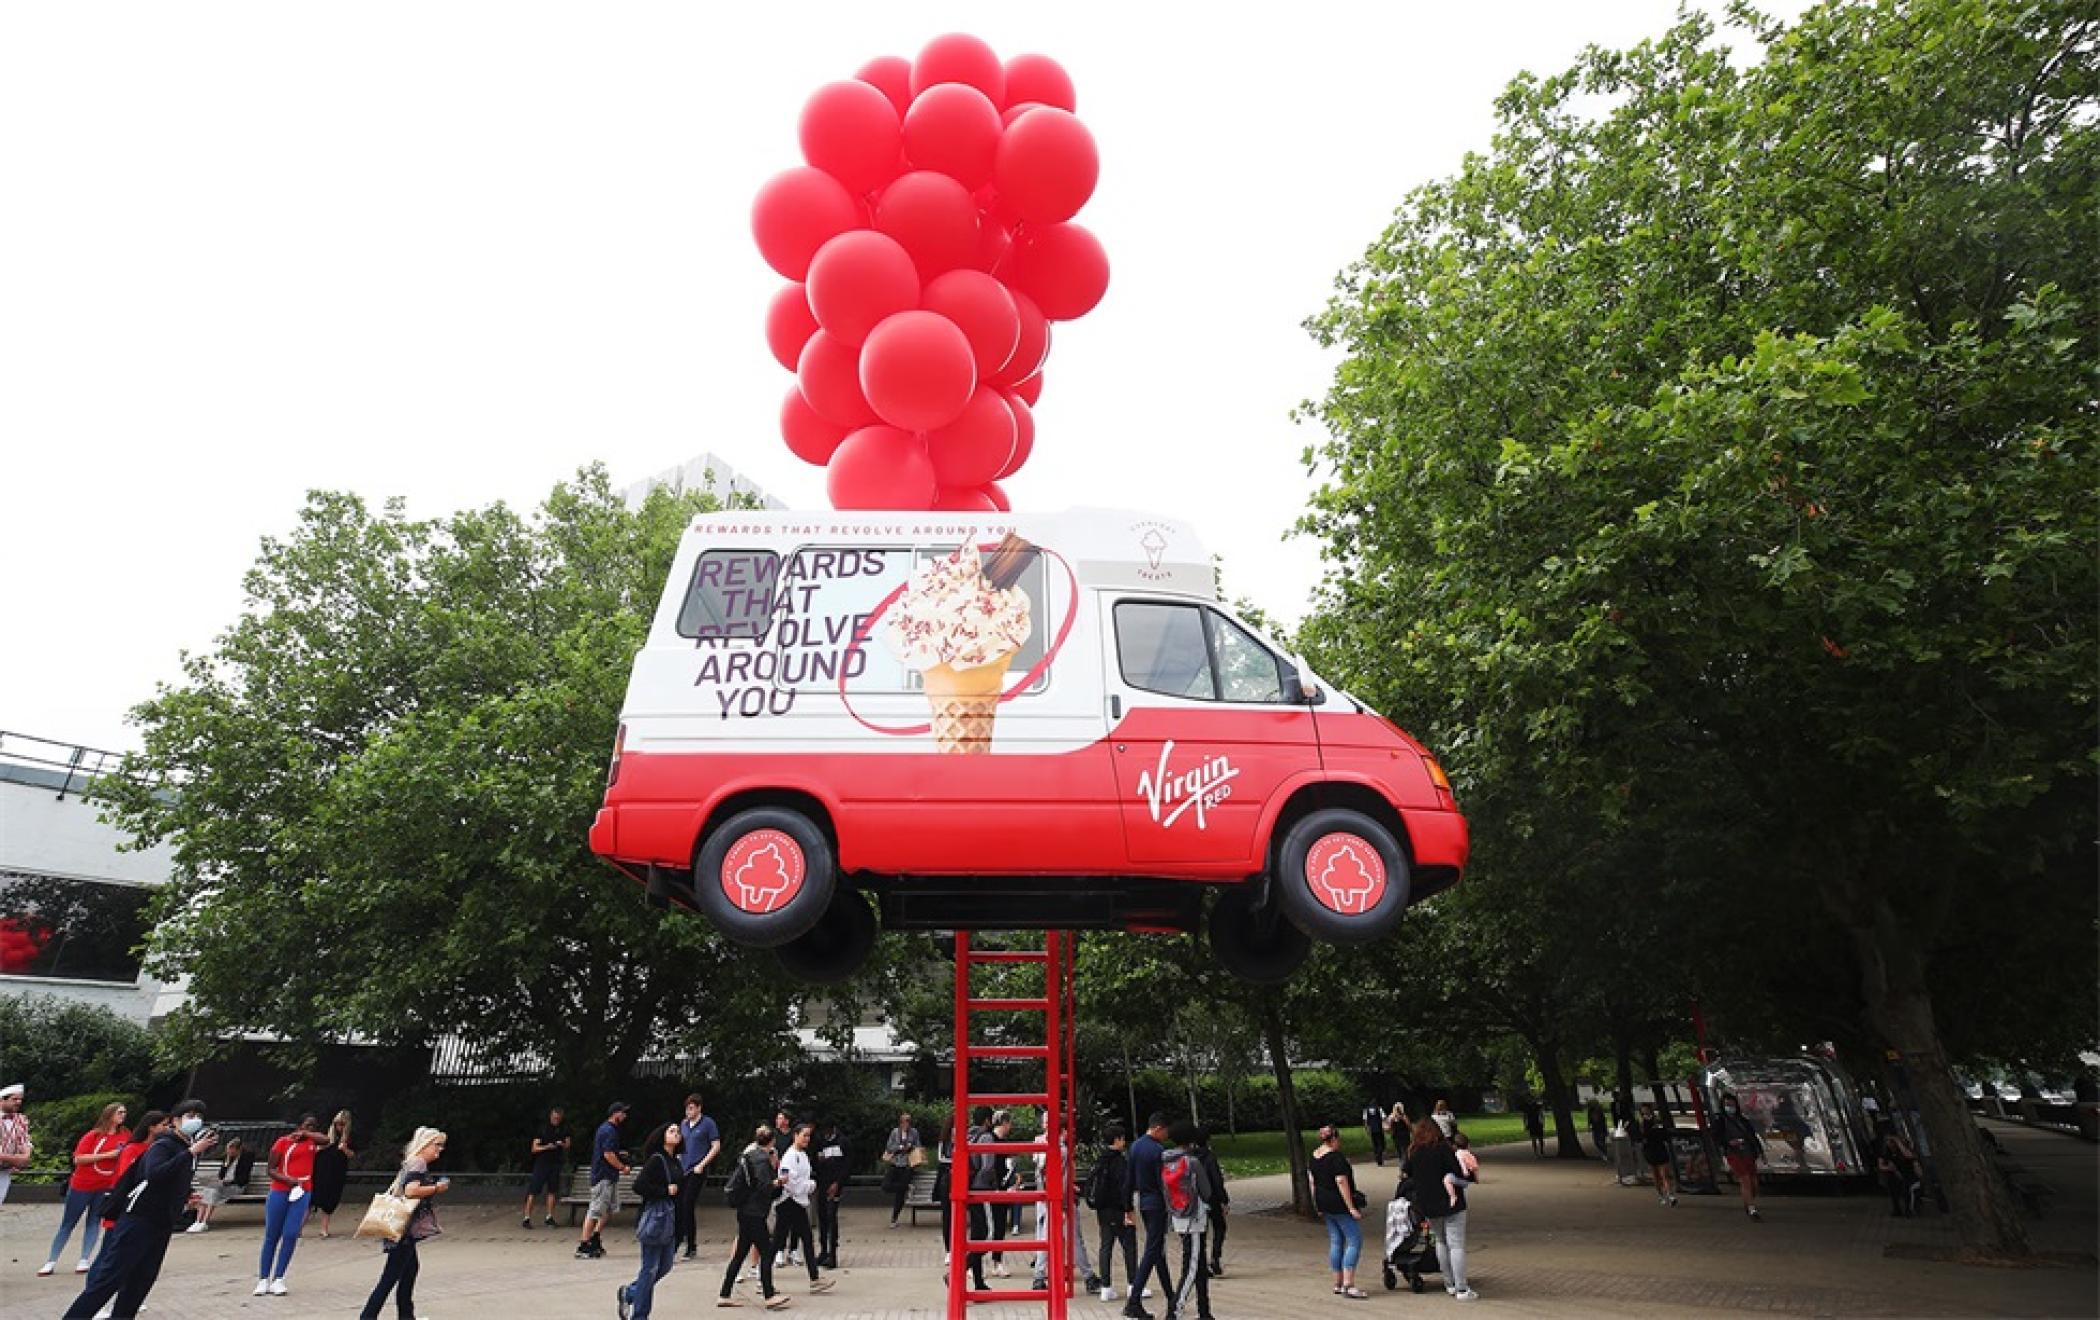 维珍红奖励APP发布活动策划把一辆冰淇淋车吊在了半空中